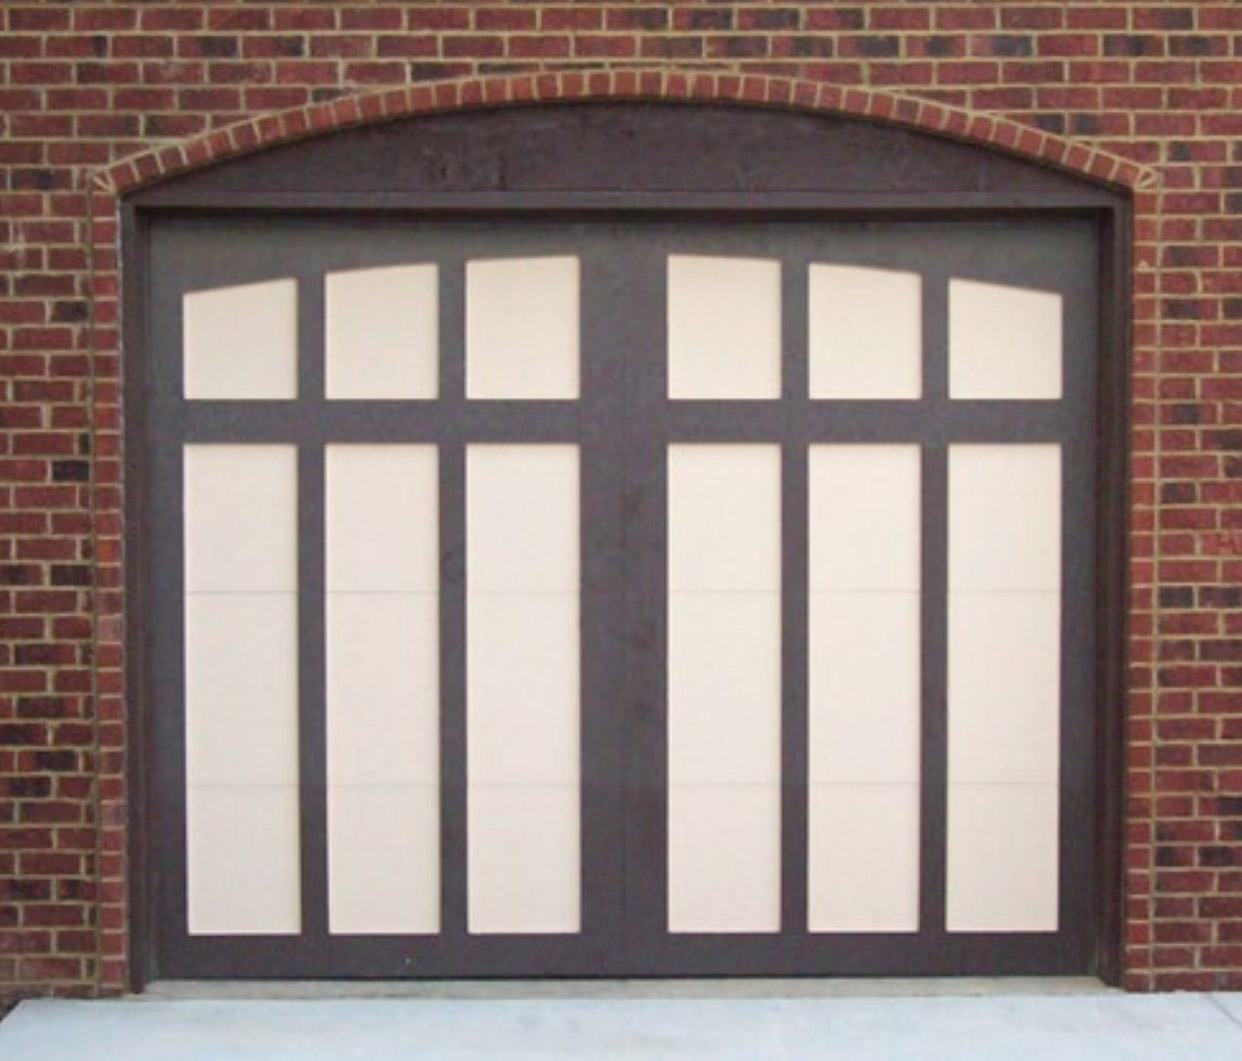 Bronze residential garage door panel texture and color swatch